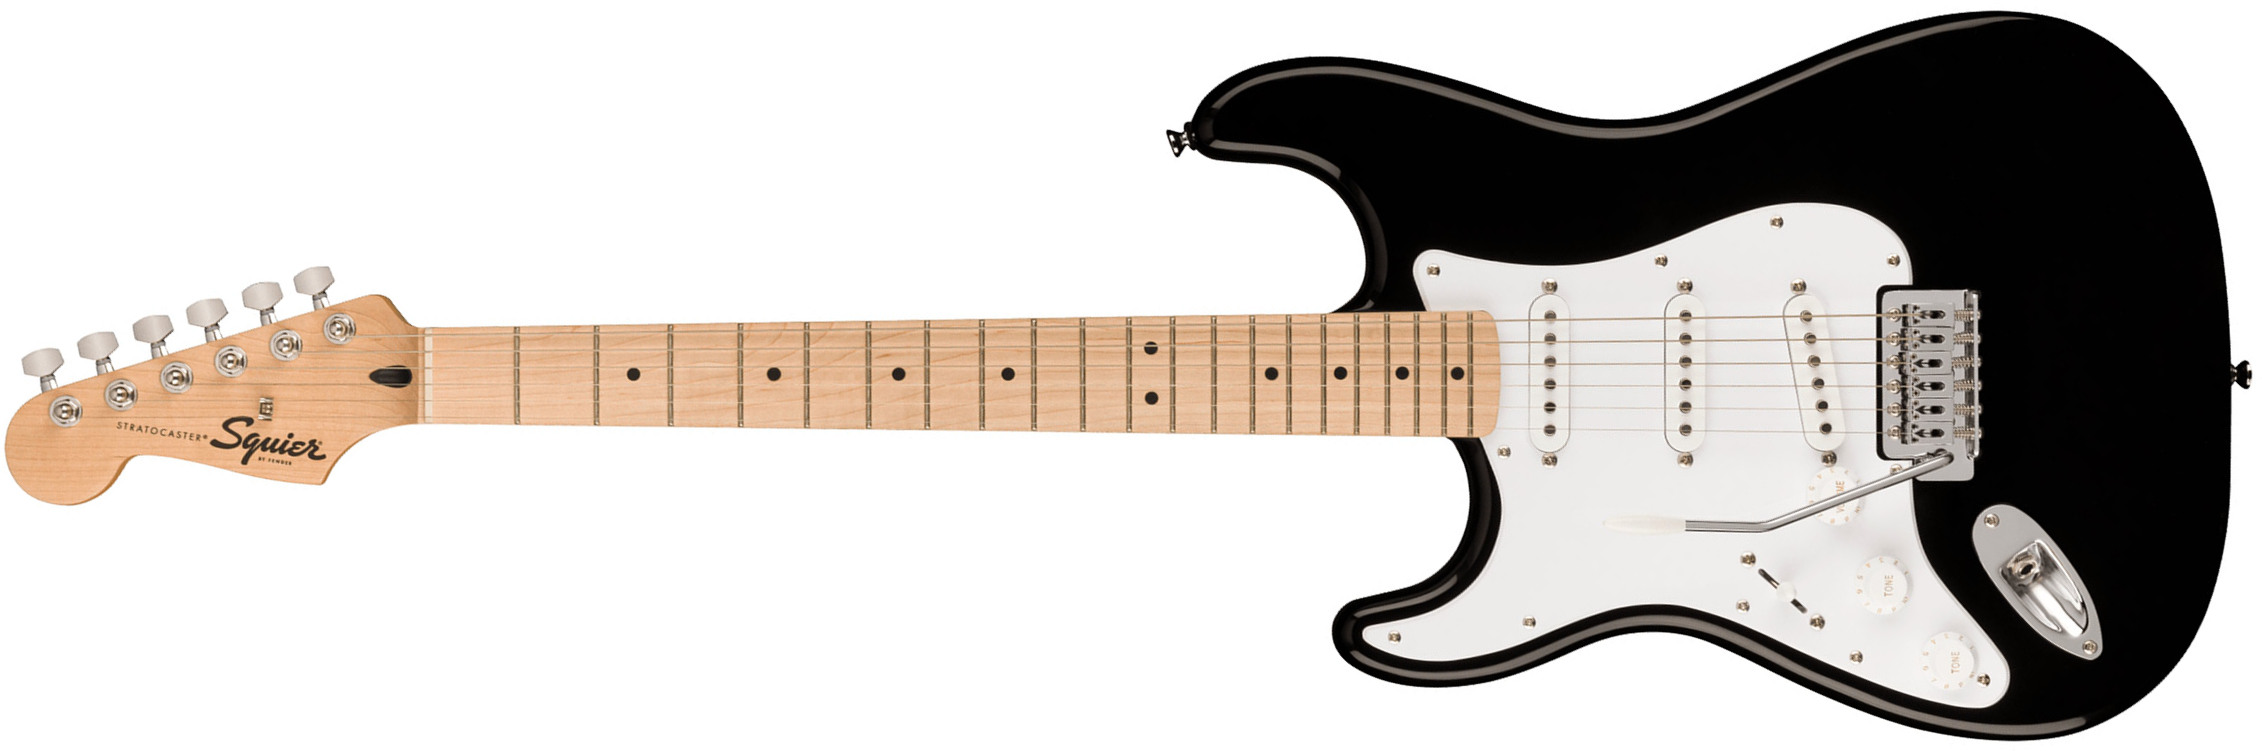 Squier Strat Sonic Lh Gaucher 3s Trem Mn - Black - E-Gitarre für Linkshänder - Main picture